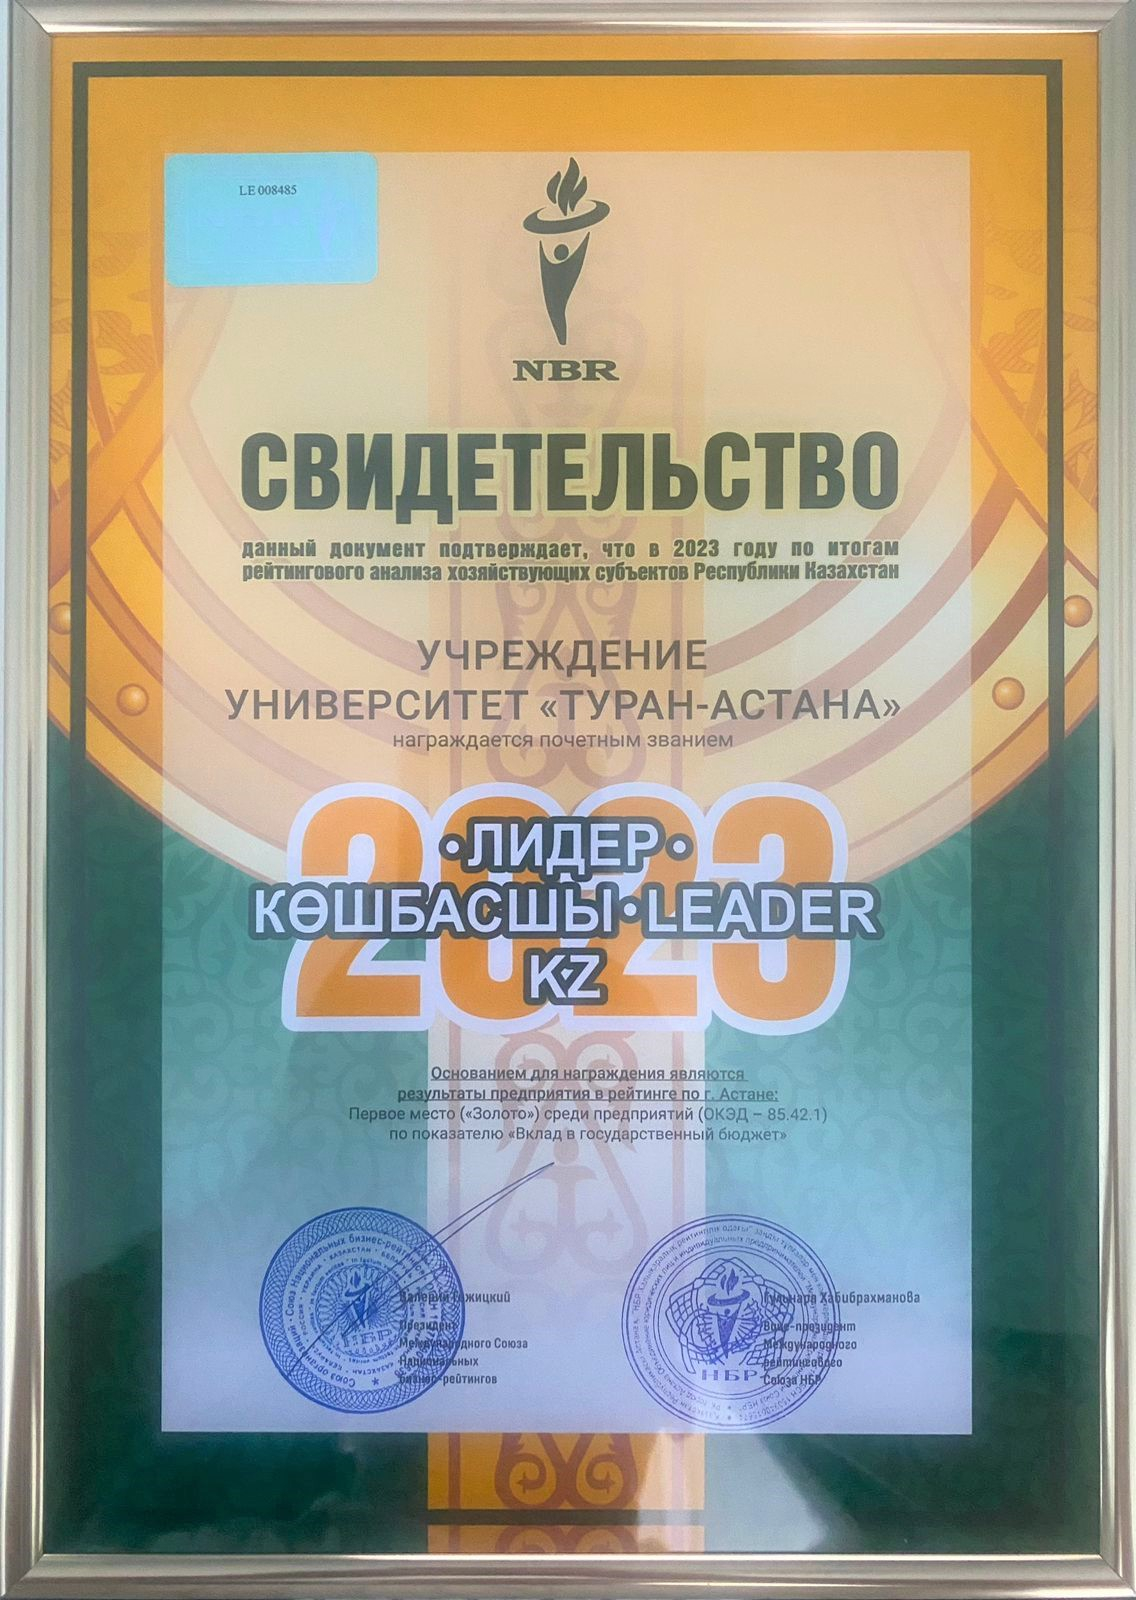 Университет «Туран-Астана» удостоен почетного звания «Лидер-Көшбасшы-Leader.KZ»